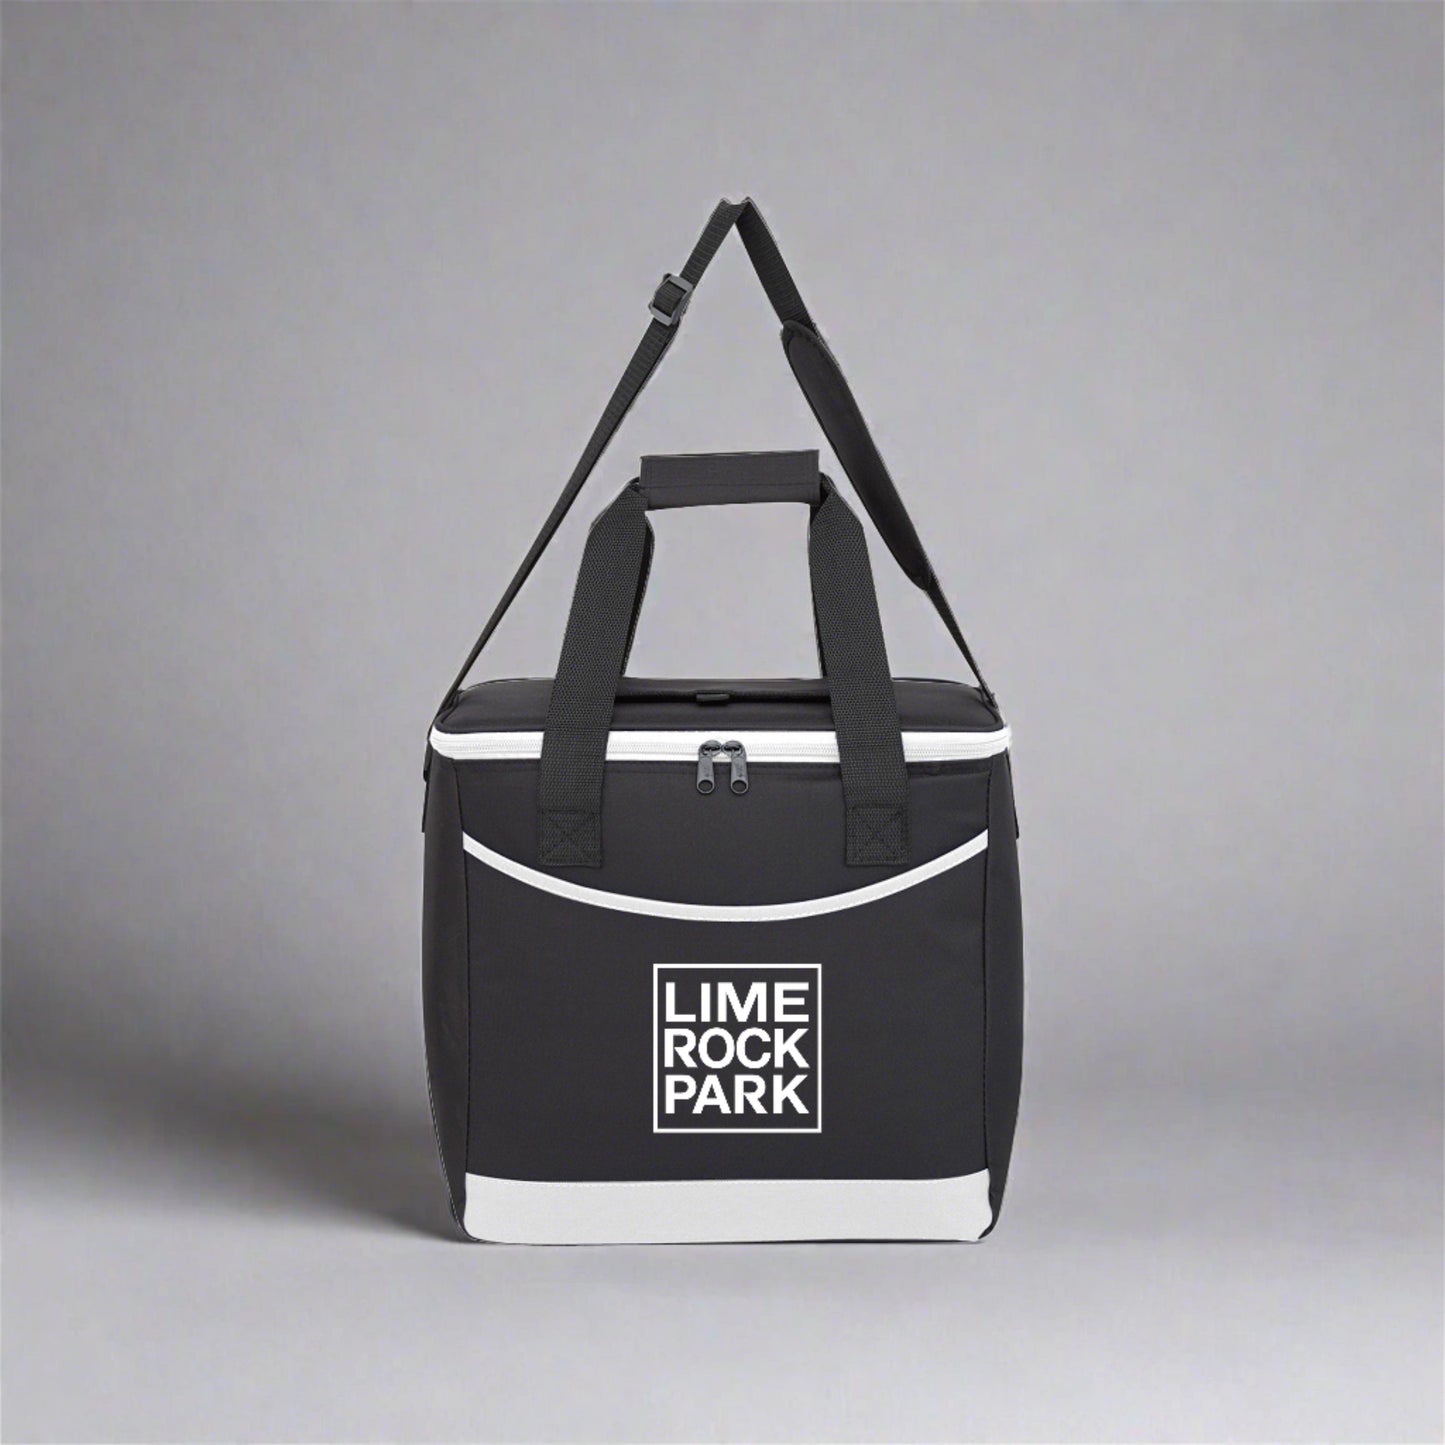 Lime Rock Park Cooler Tote Bag